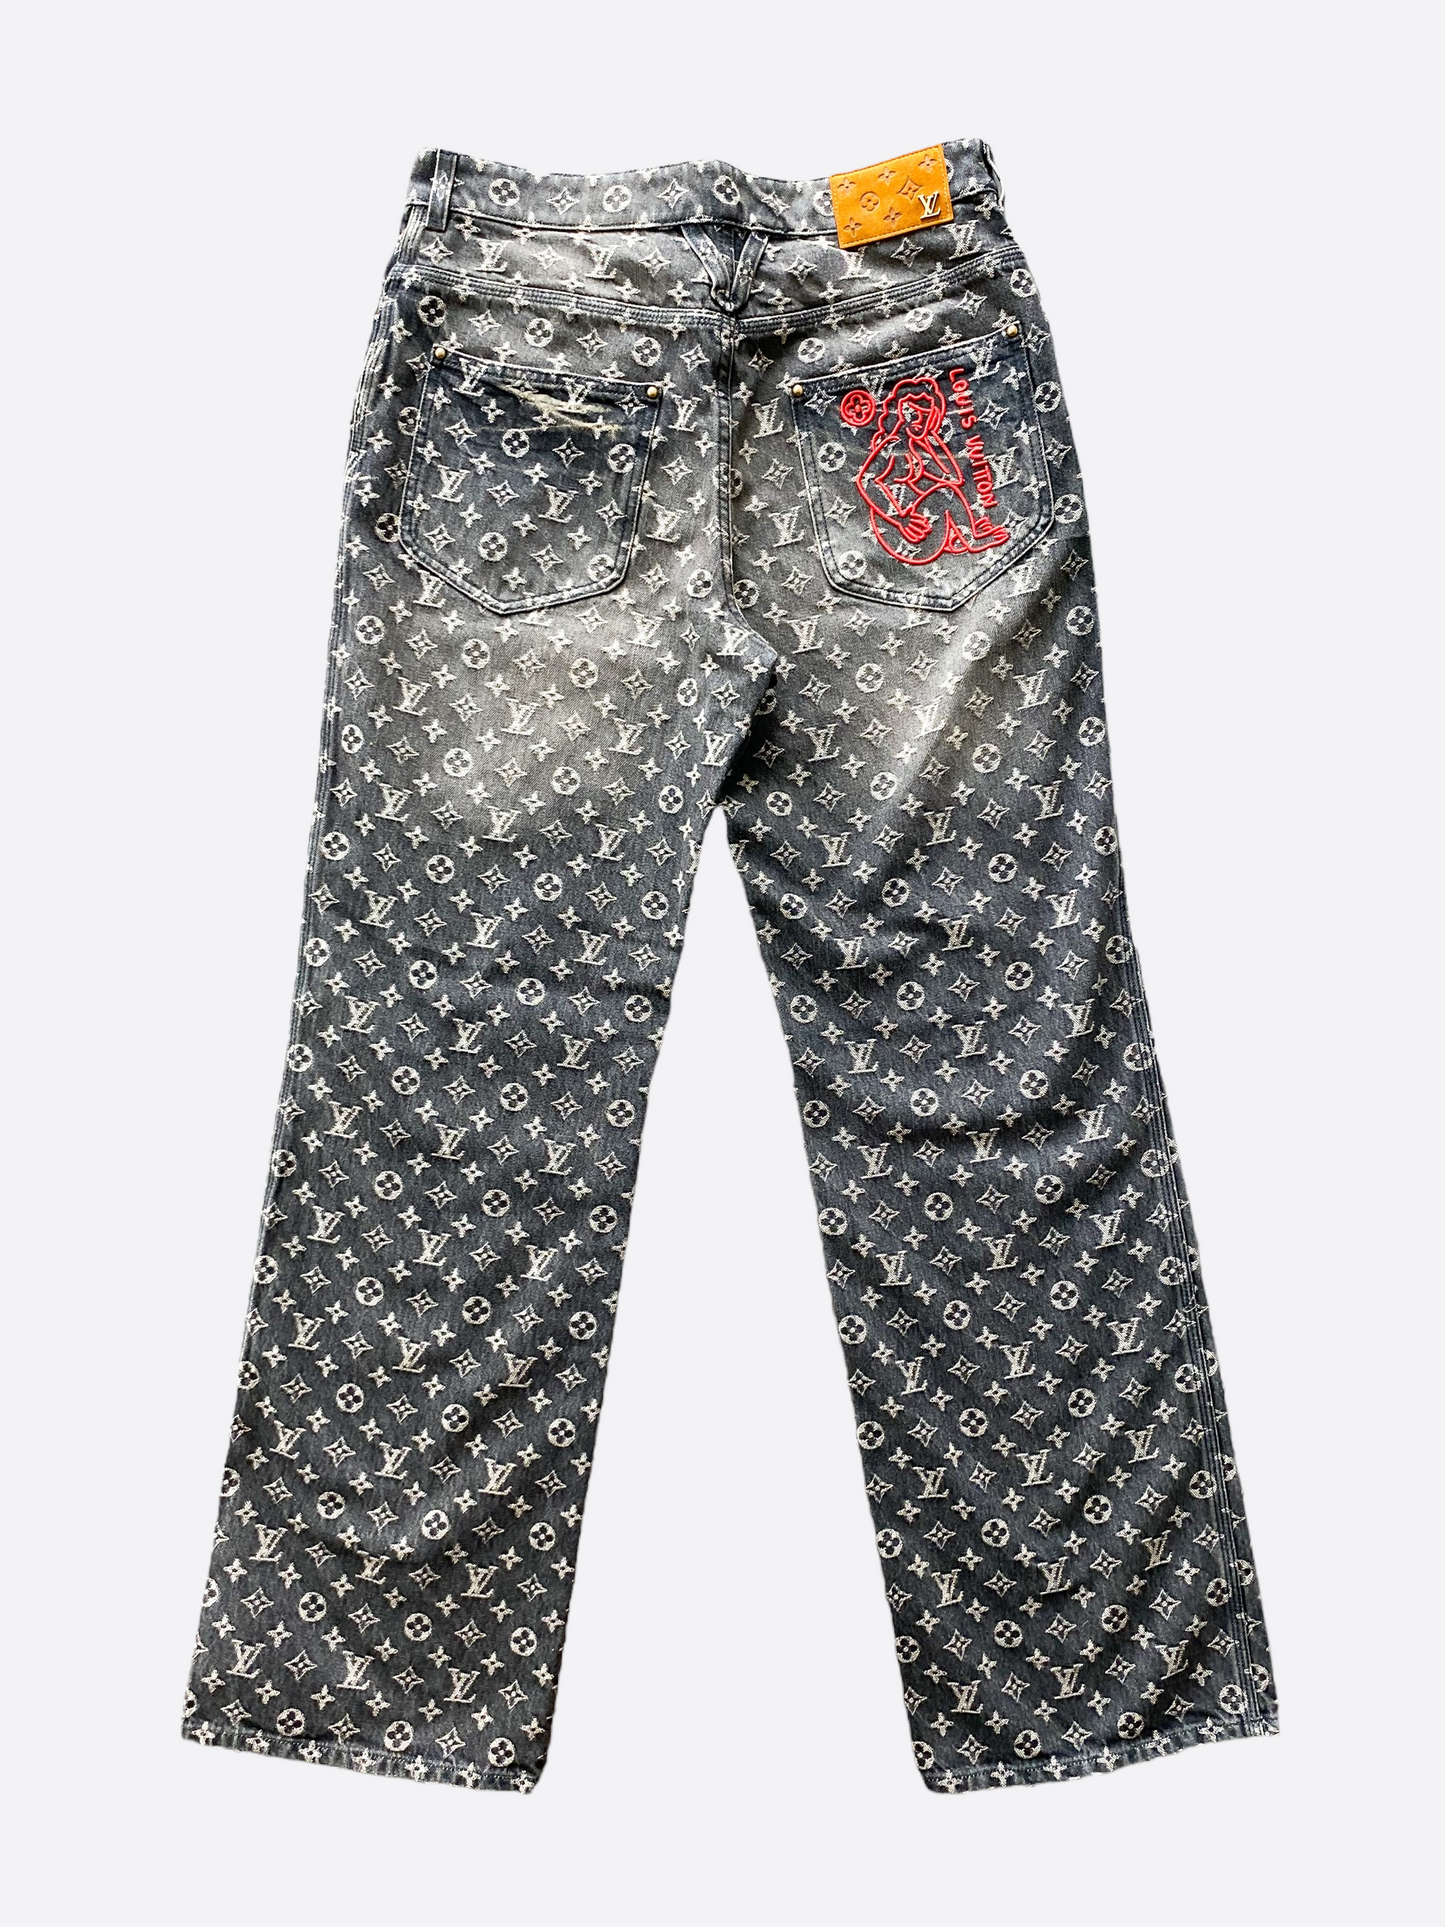 Louis Vuitton Monogram Low Rise Jeans